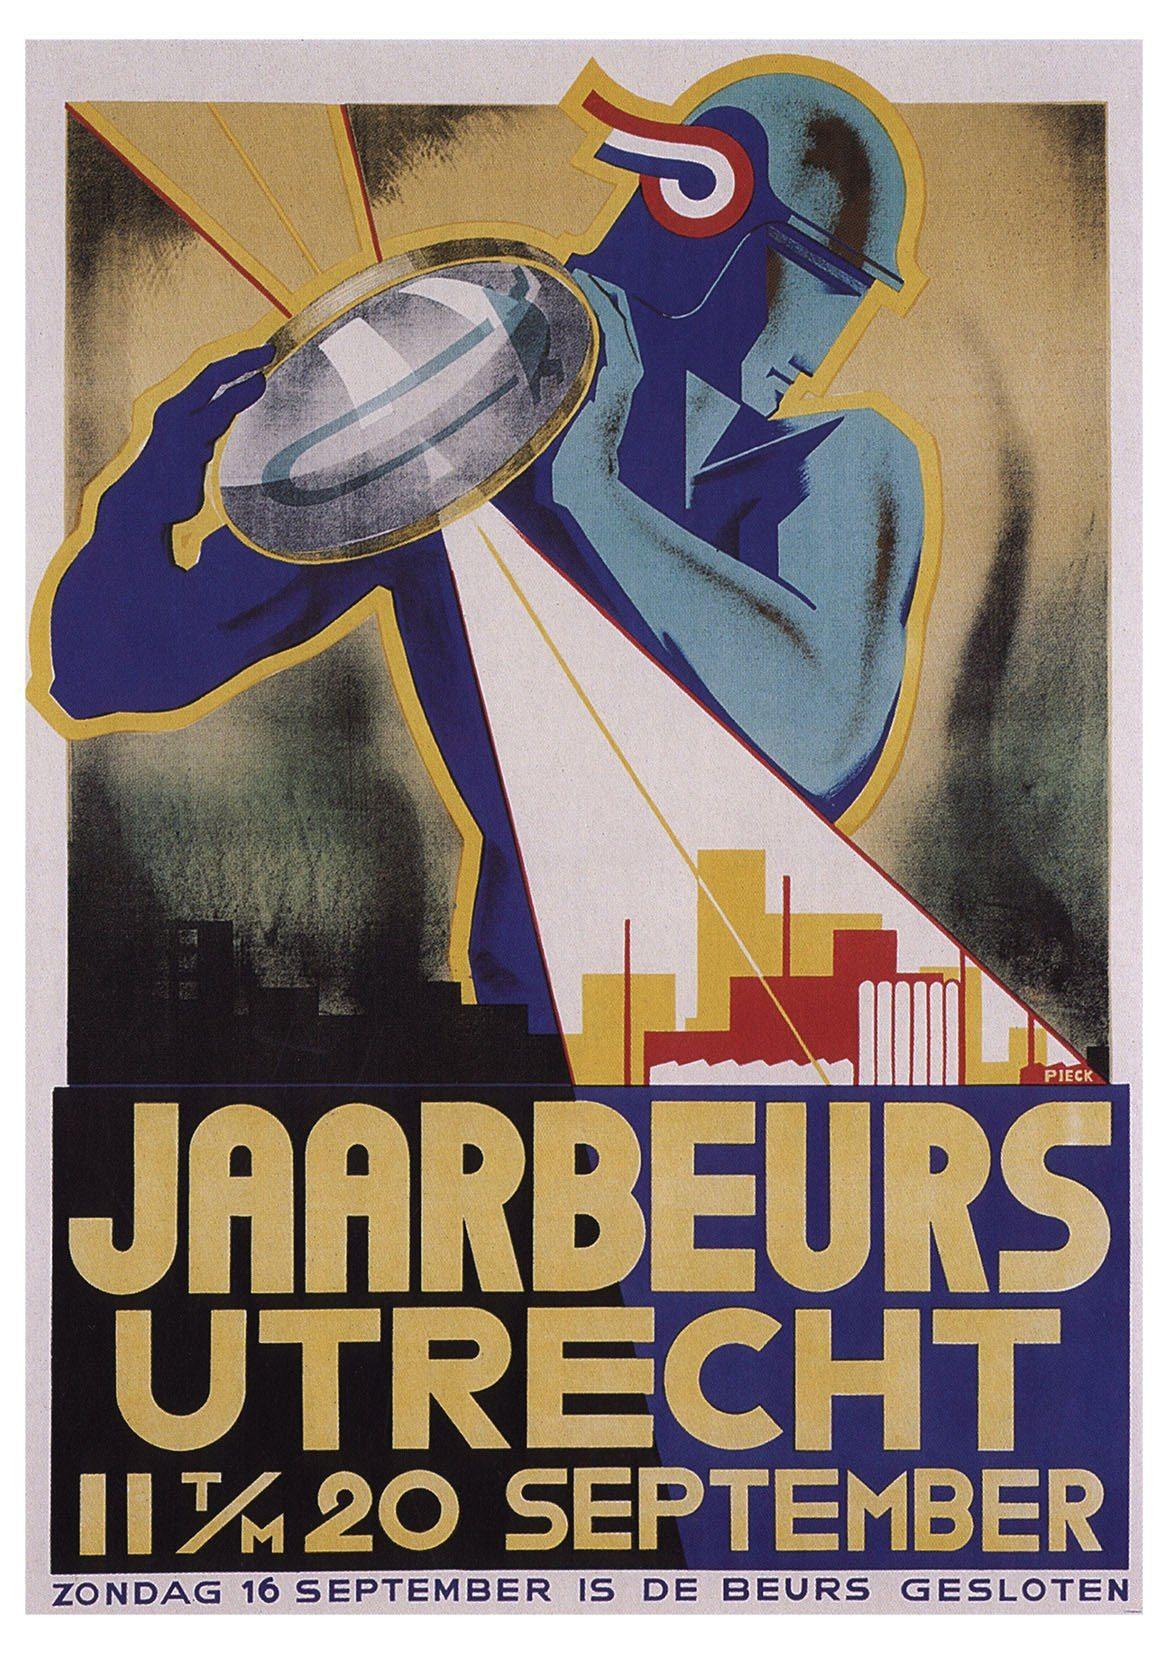 JAARBEURS UTRECHT POSTER: Vintage Dutch Advert Print - Pimlico Prints